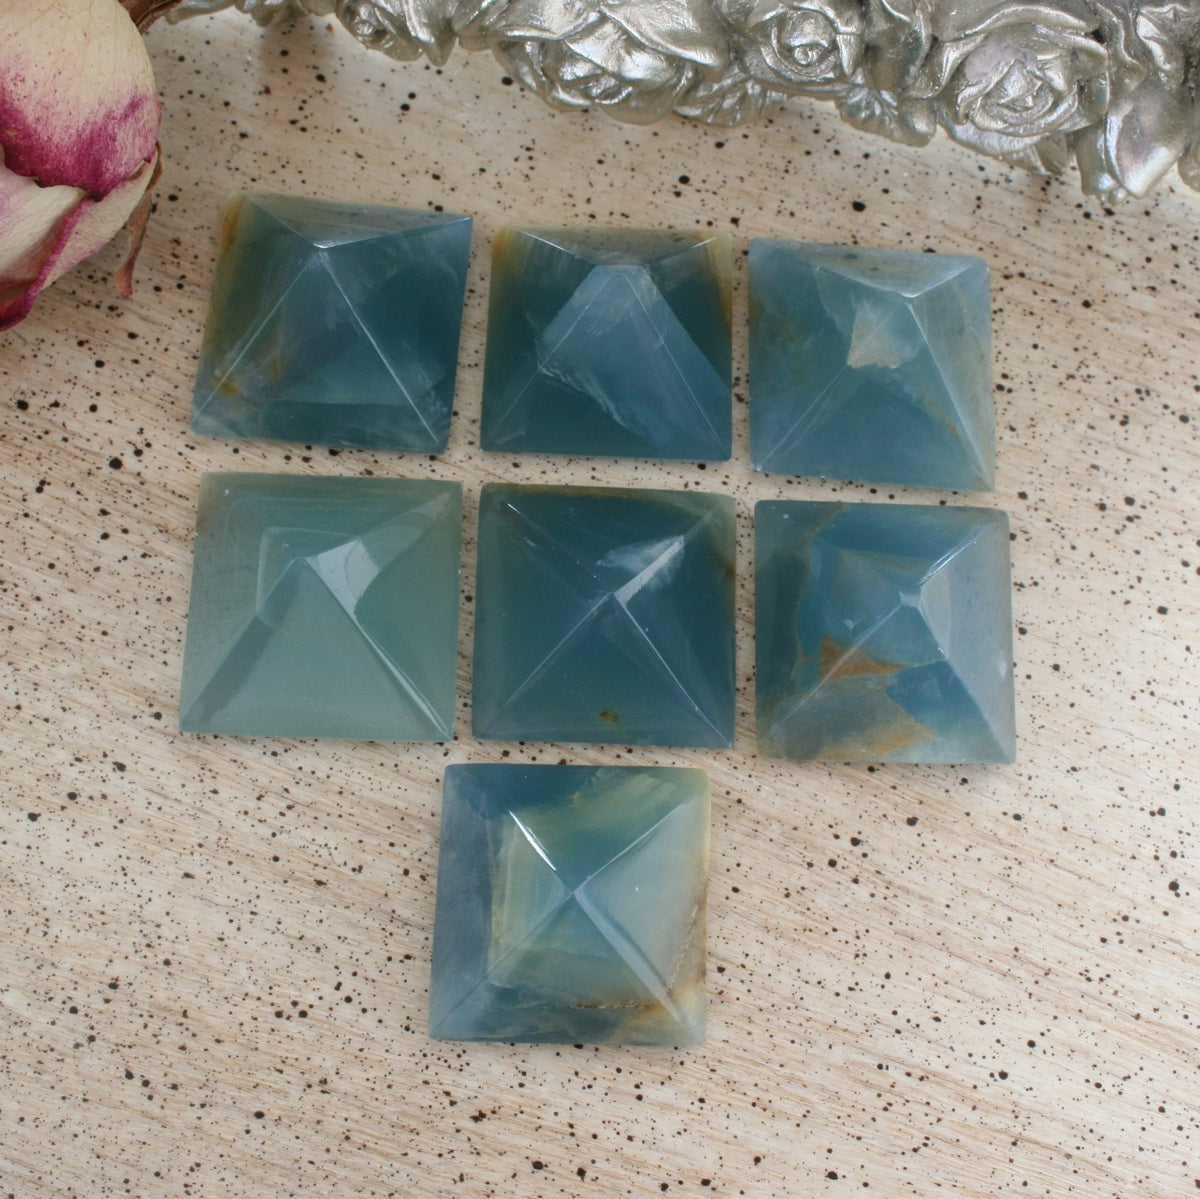 Blue Calcite / Blue Onyx Pyramid from Argentina, also called Lemurian Aquatine Calcite, LGPY3